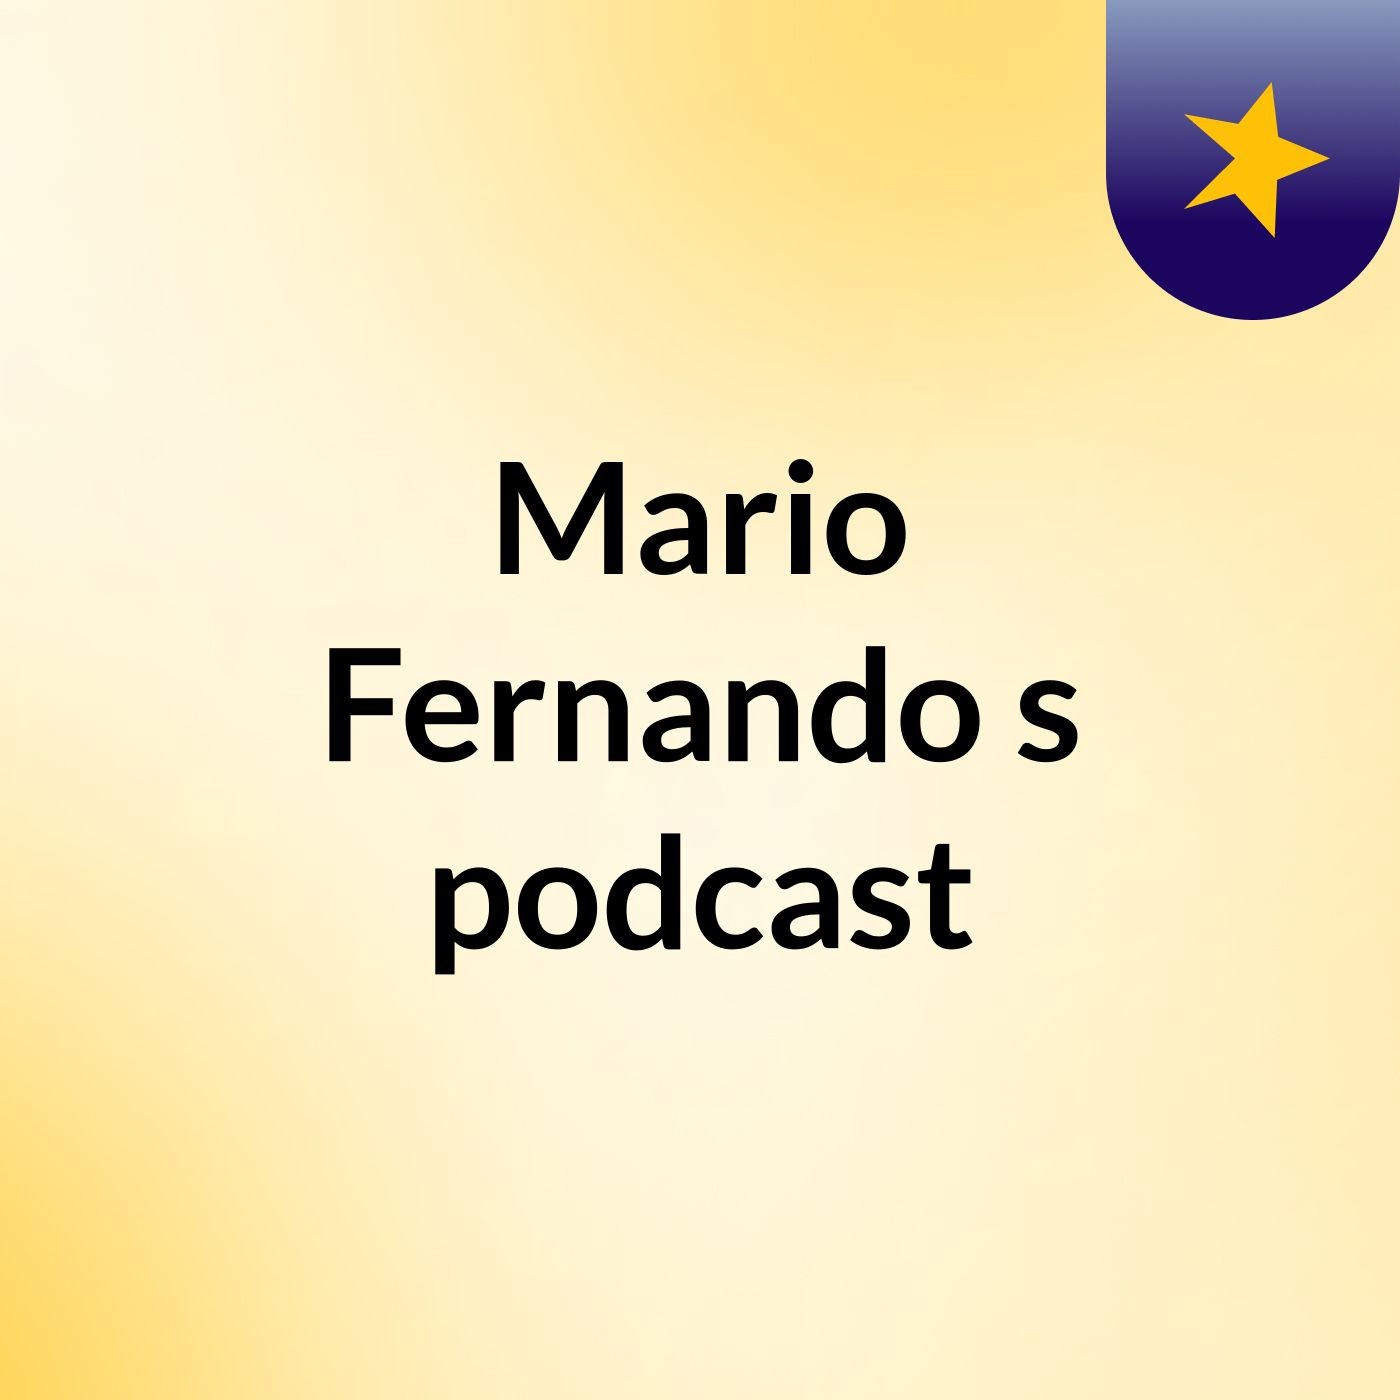 Mario Fernando's podcast